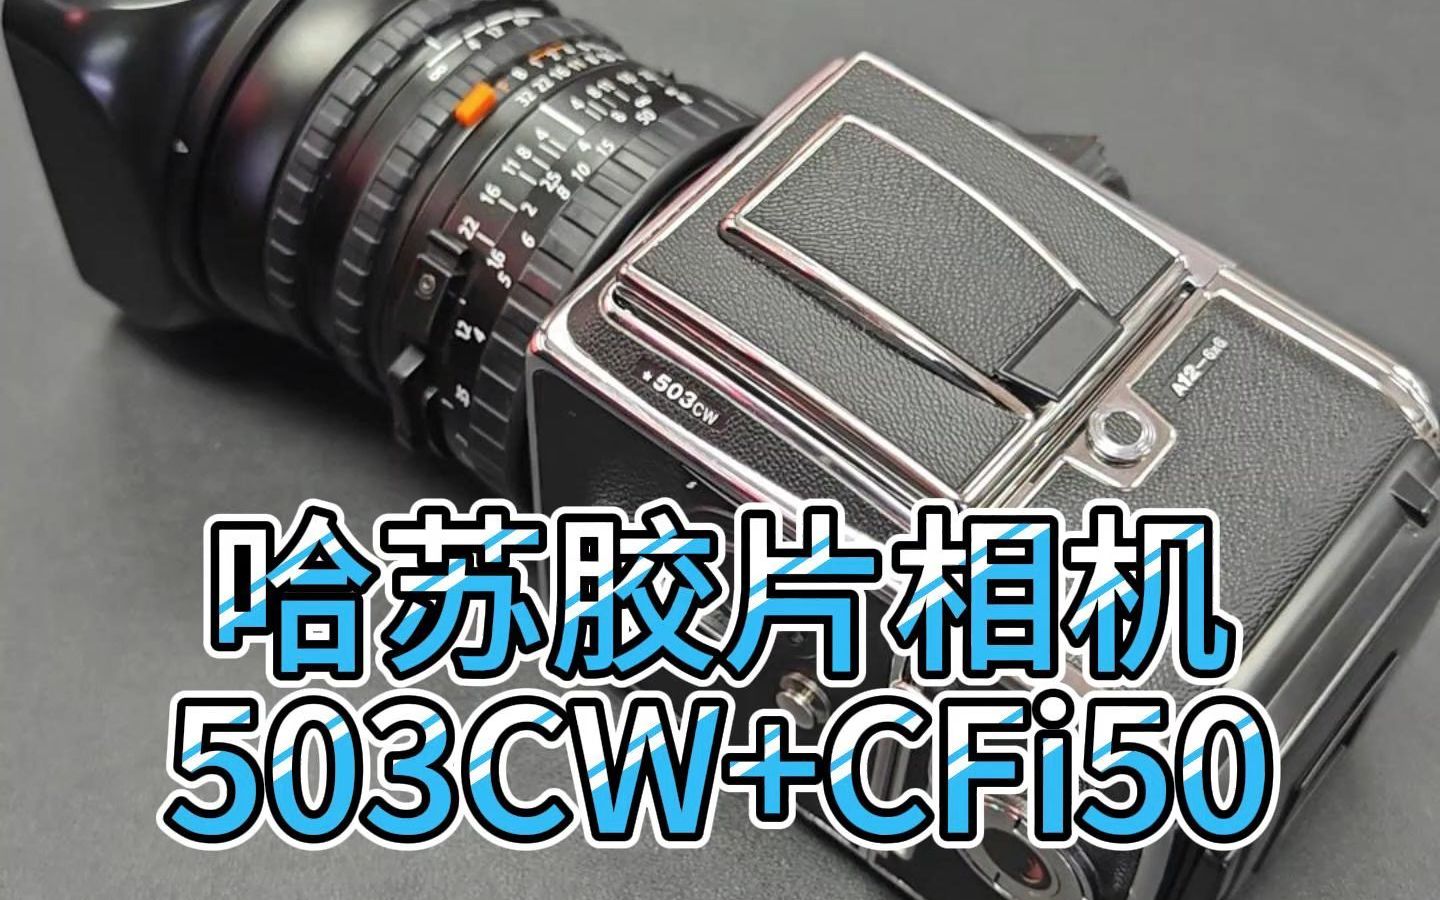 哈苏胶片相机503cw cfi50